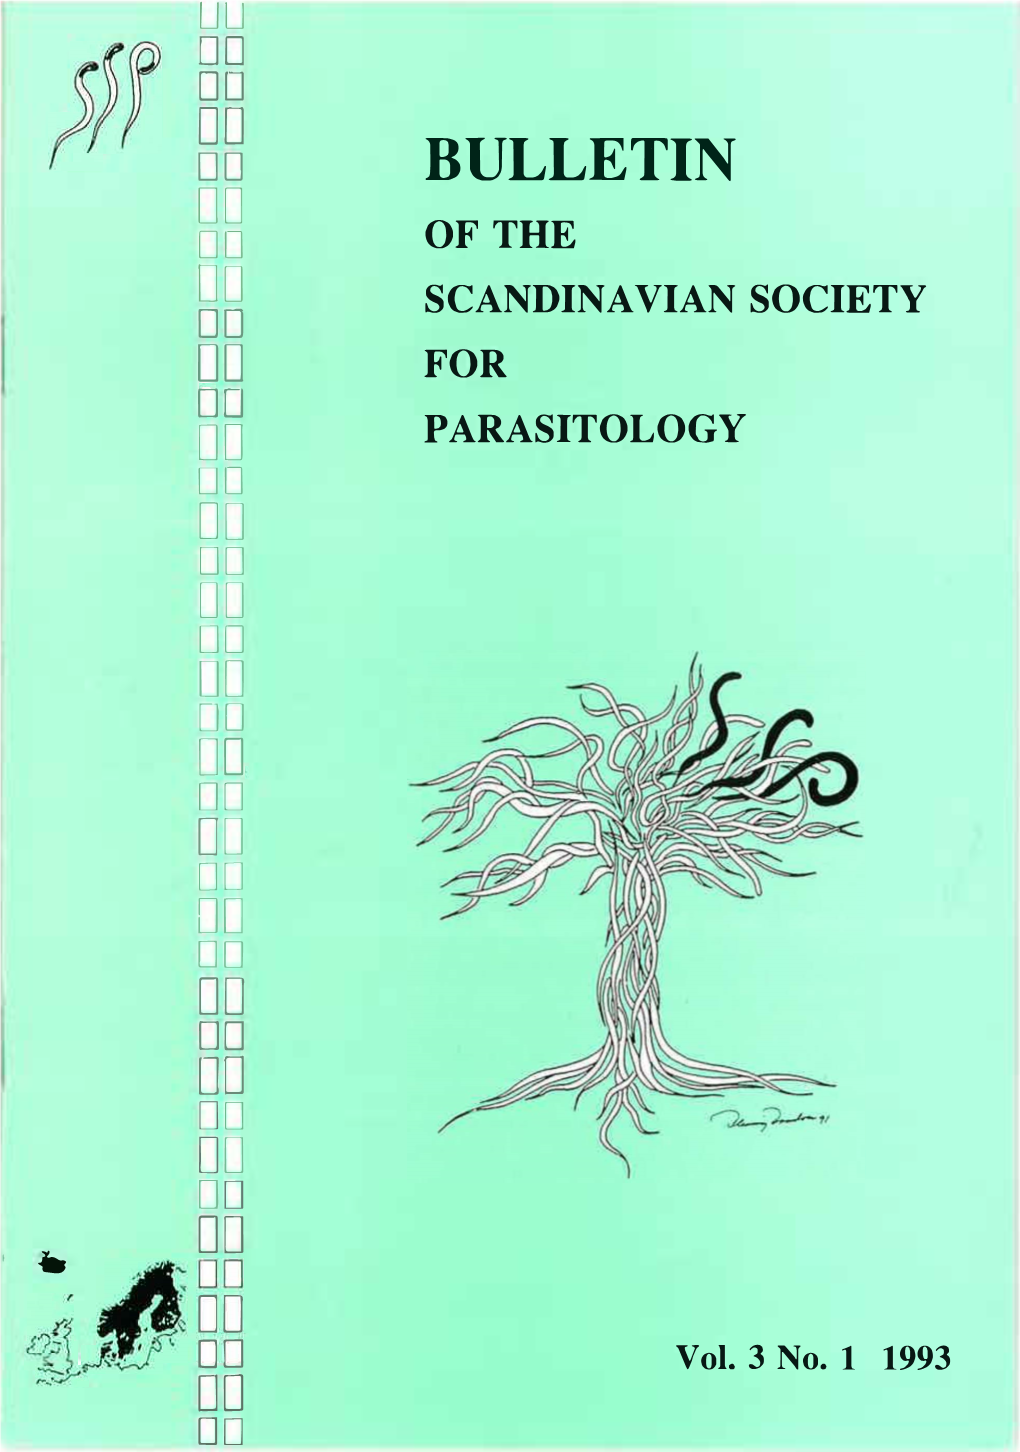 SSP Bulletin 1993 Vol. 3 No.1